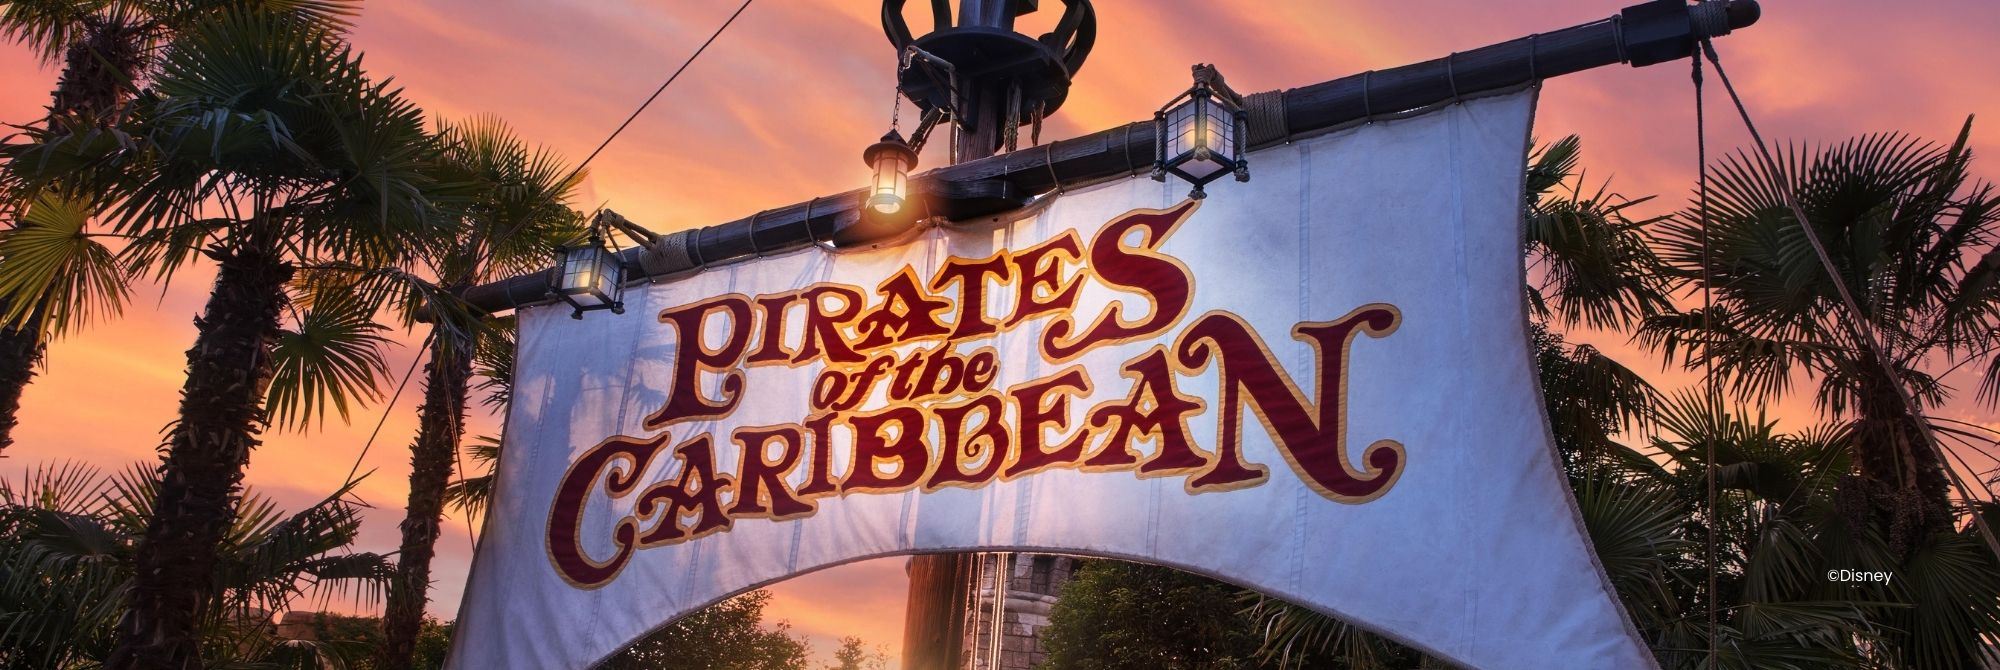 Weißes Segel auf einem Mast mit Pirates of the Caribbean in roten Buchstaben